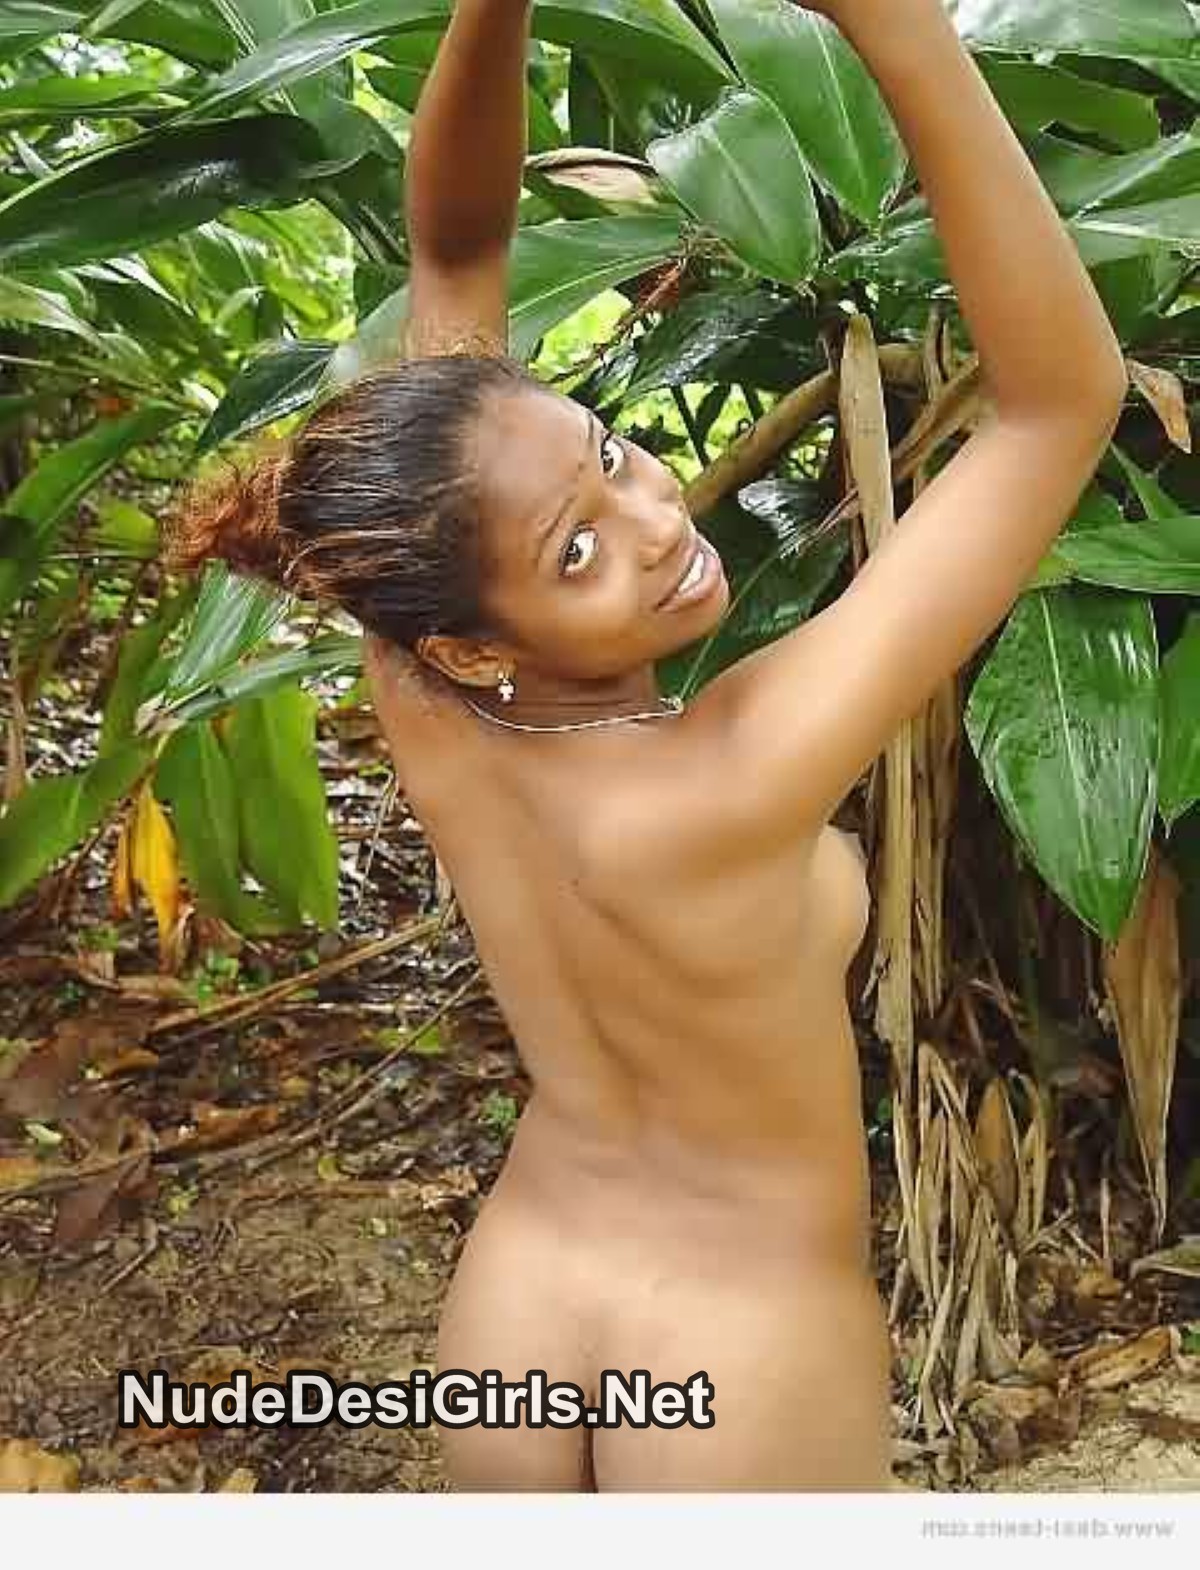 Kerala nudity